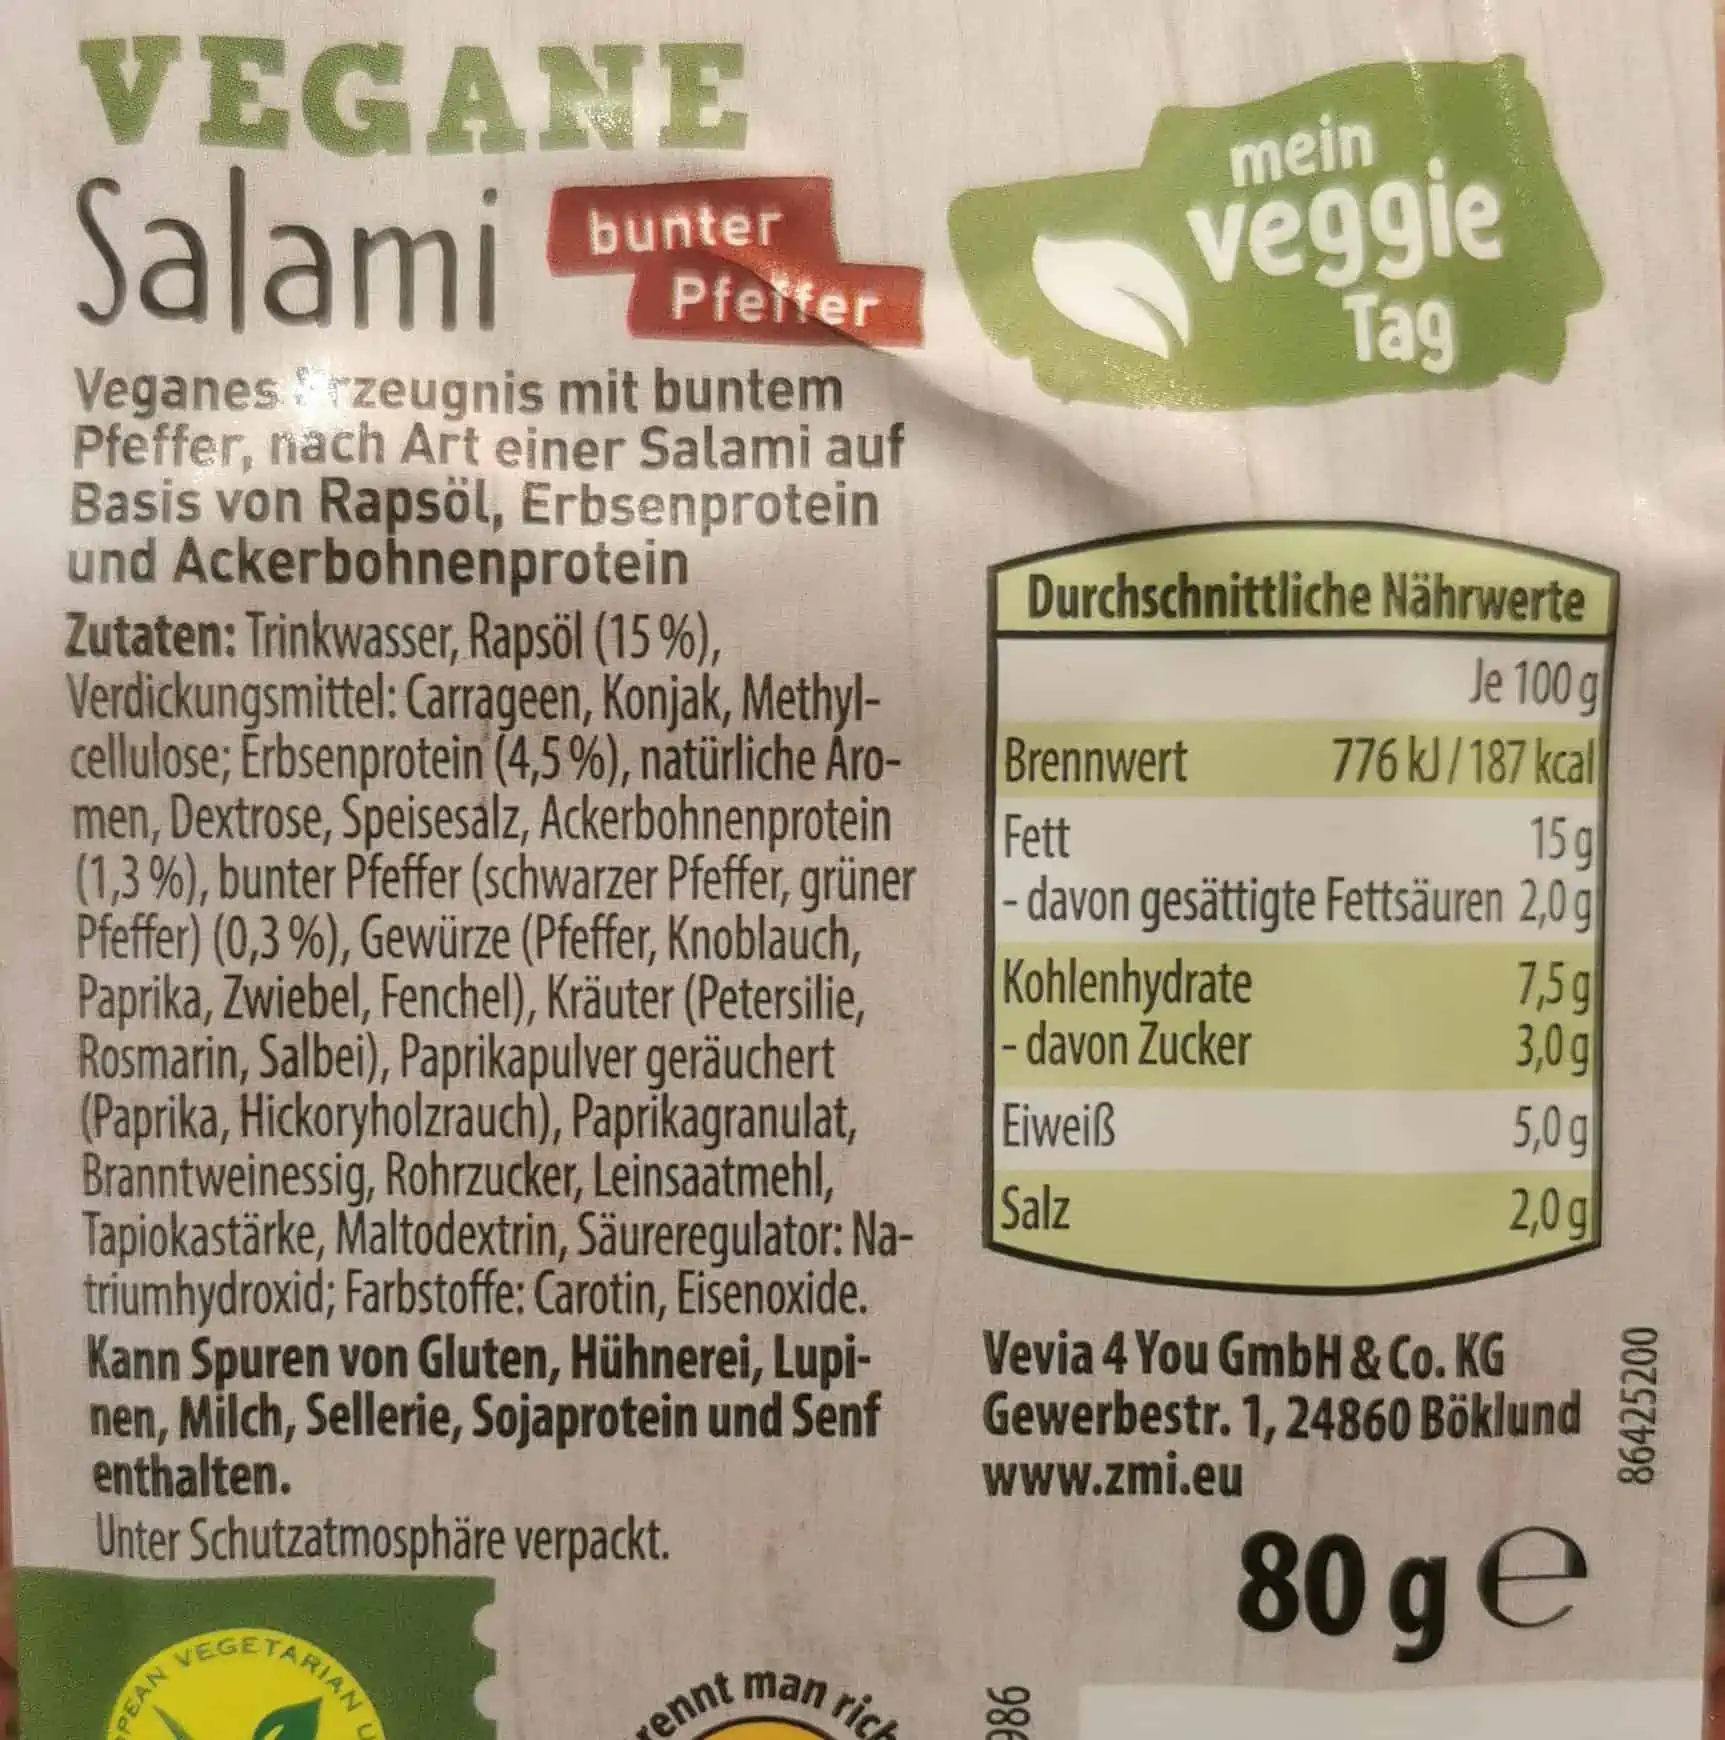 Mein Veggie Tag - Vegane Salami mit buntem Pfeffer Zutaten Nährwerte